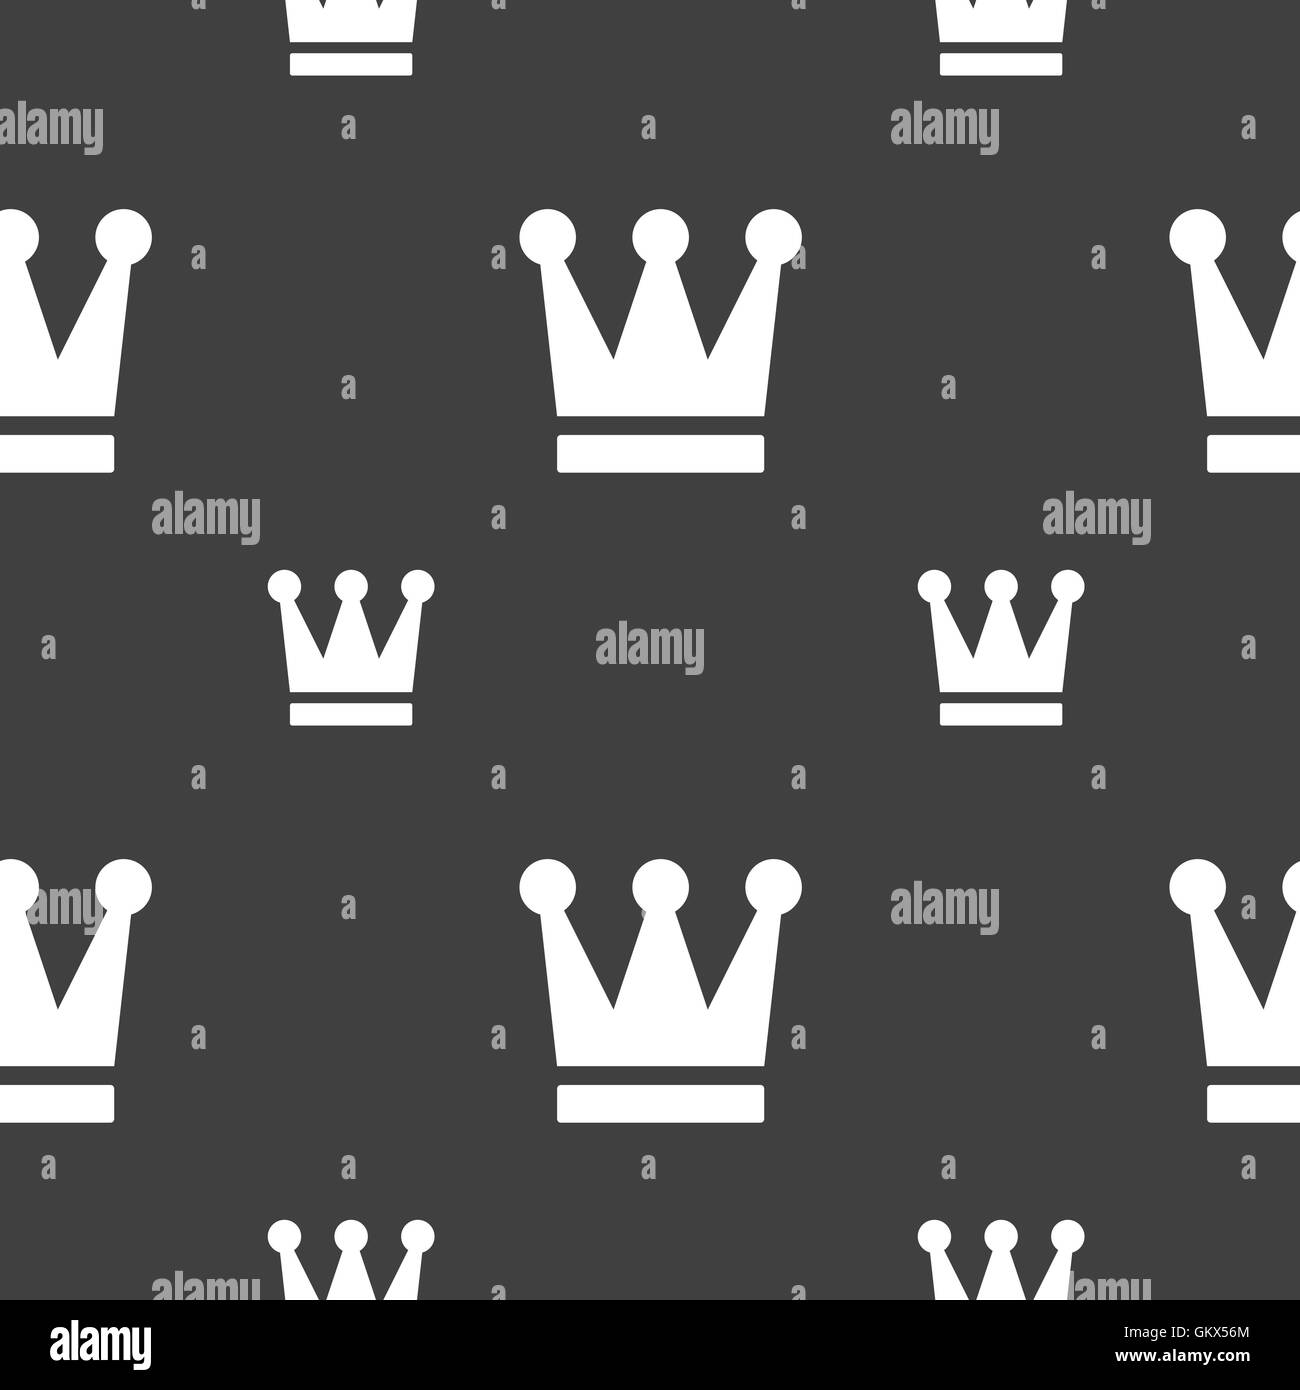 König, Krone Symbol Zeichen. Nahtlose Muster auf einem grauen Hintergrund. Vektor Stock Vektor